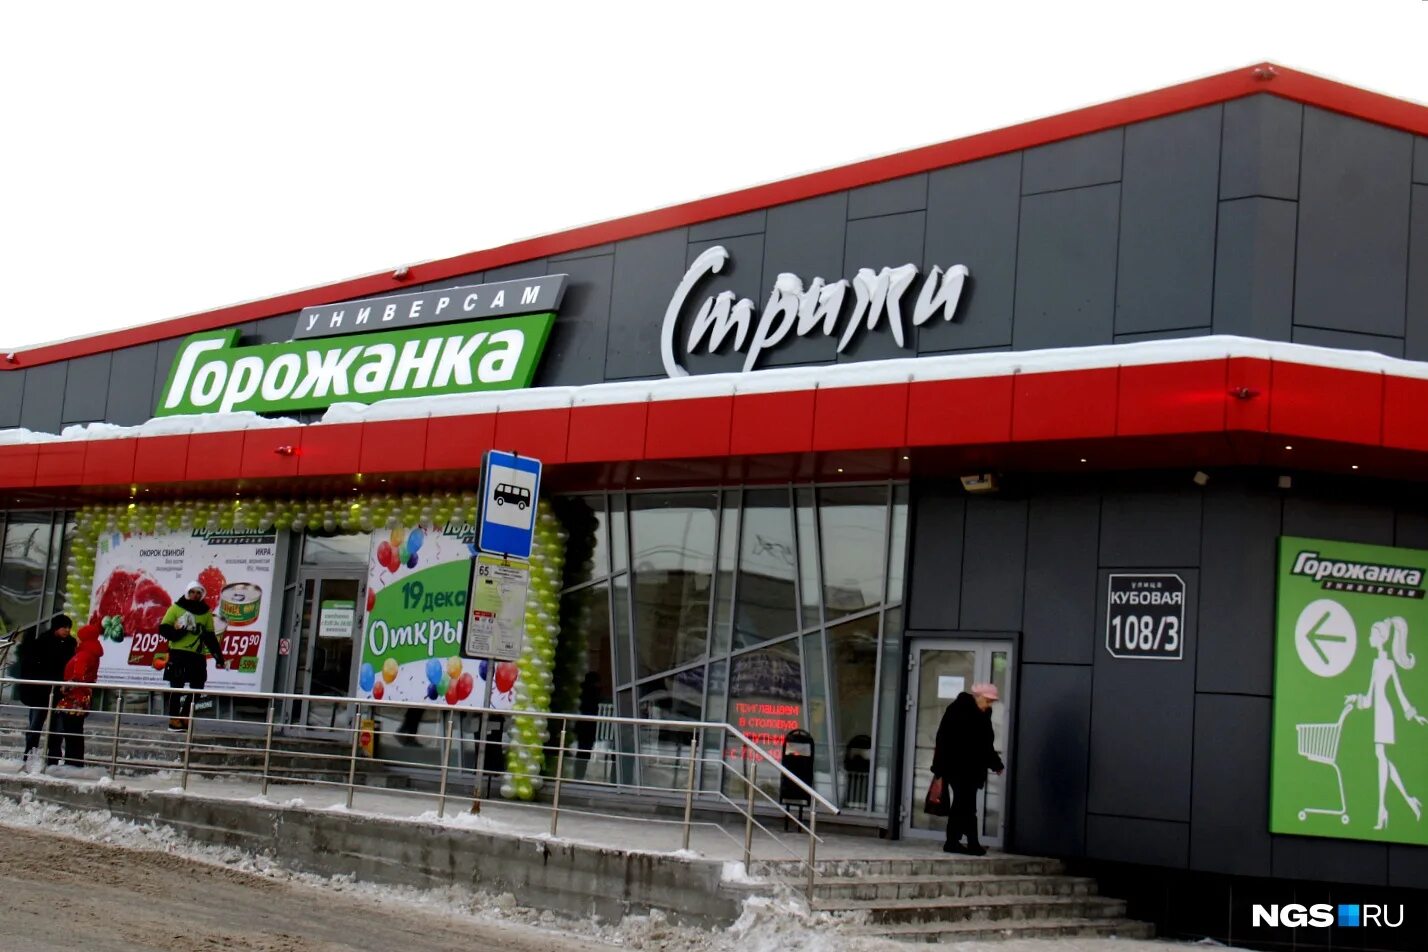 Сеть магазинов ела. Горожанка сеть магазинов. Магазин горожанка в Новосибирске. Горожанка на кубовой. Закрывшиеся сетевых магазинов.